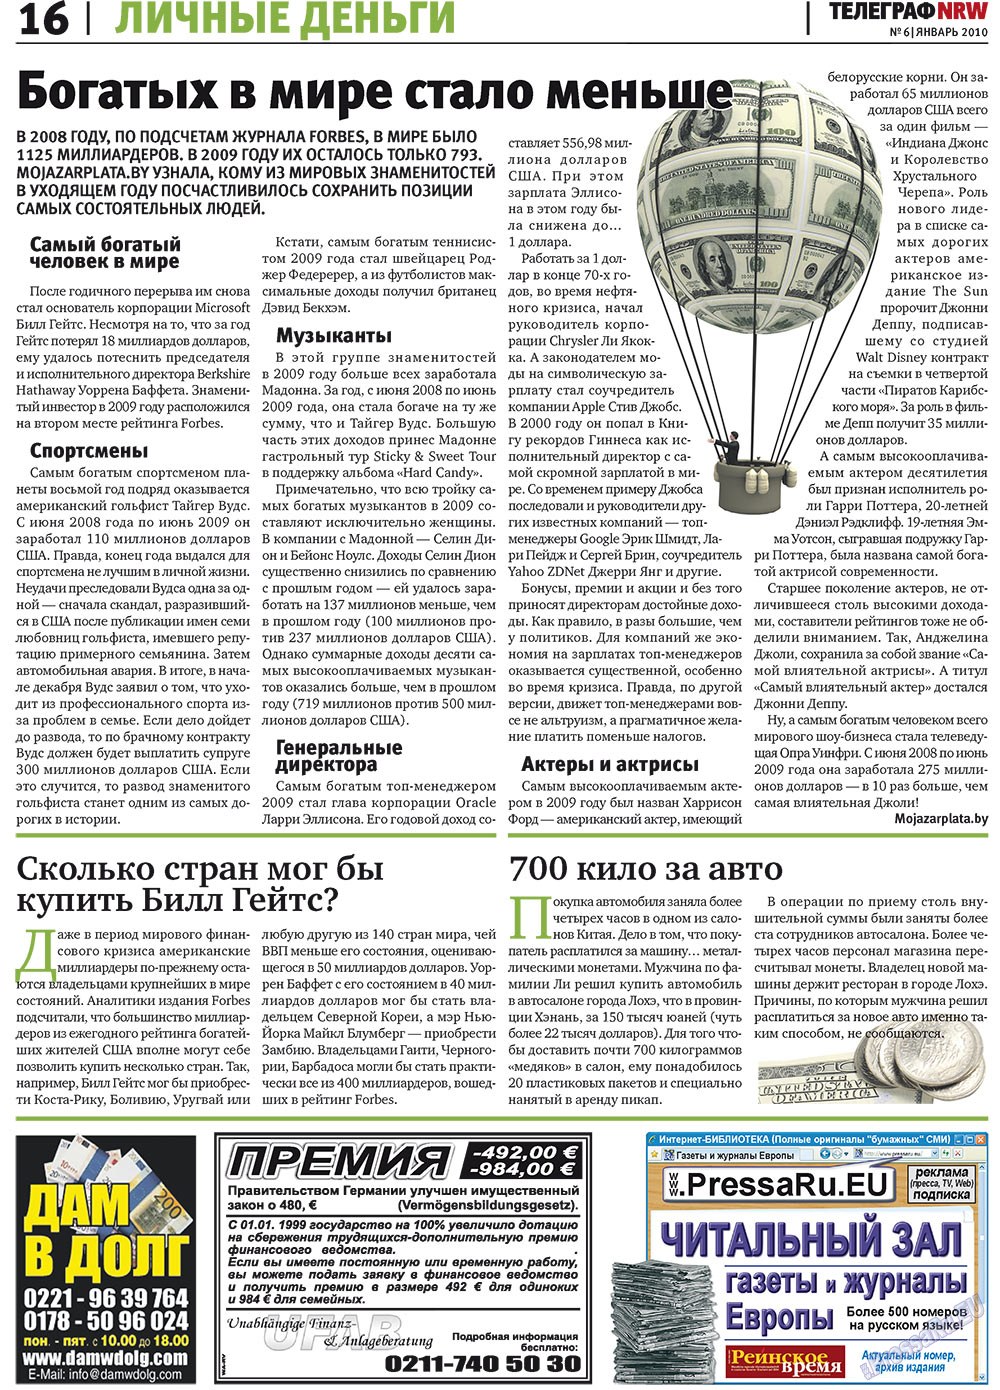 Телеграф NRW (газета). 2010 год, номер 1, стр. 16